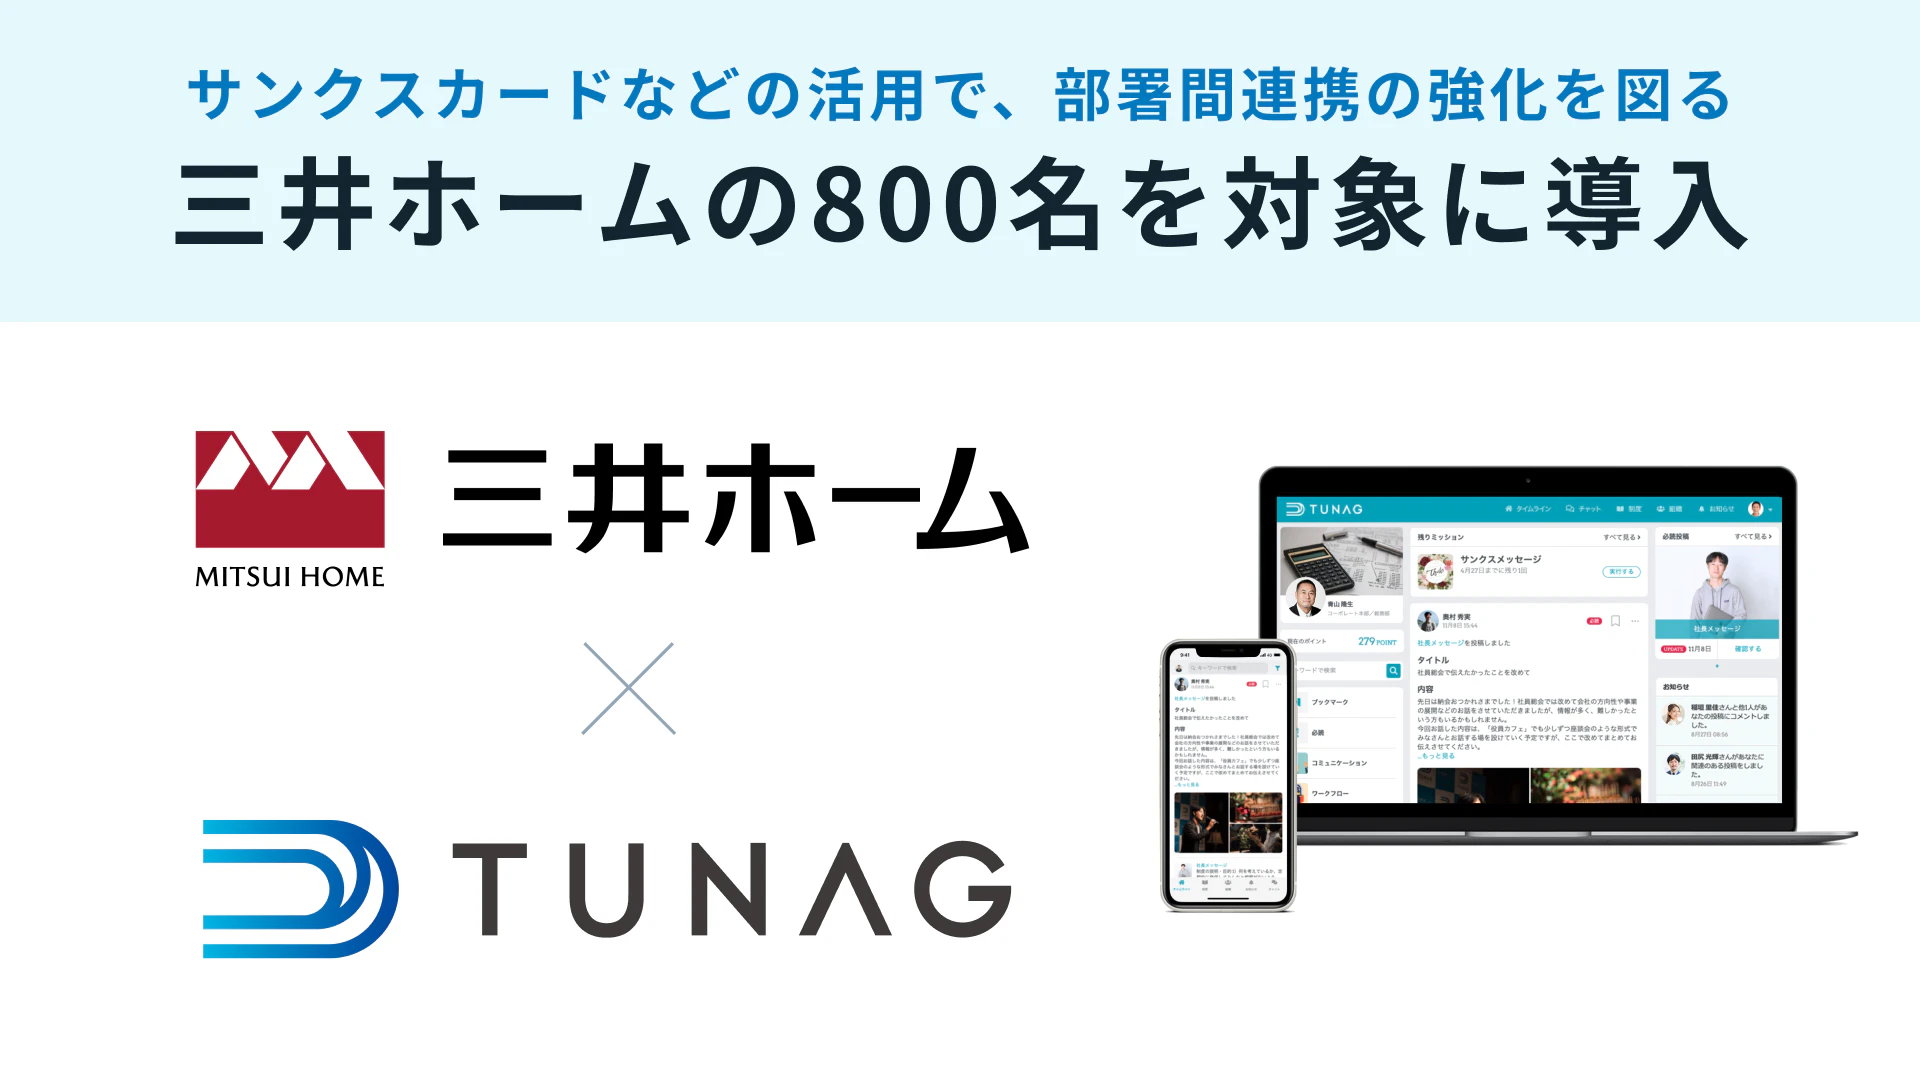 三井ホームが、エンゲージメントプラットフォーム「TUNAG」を導入！部署間連携の強化を図る